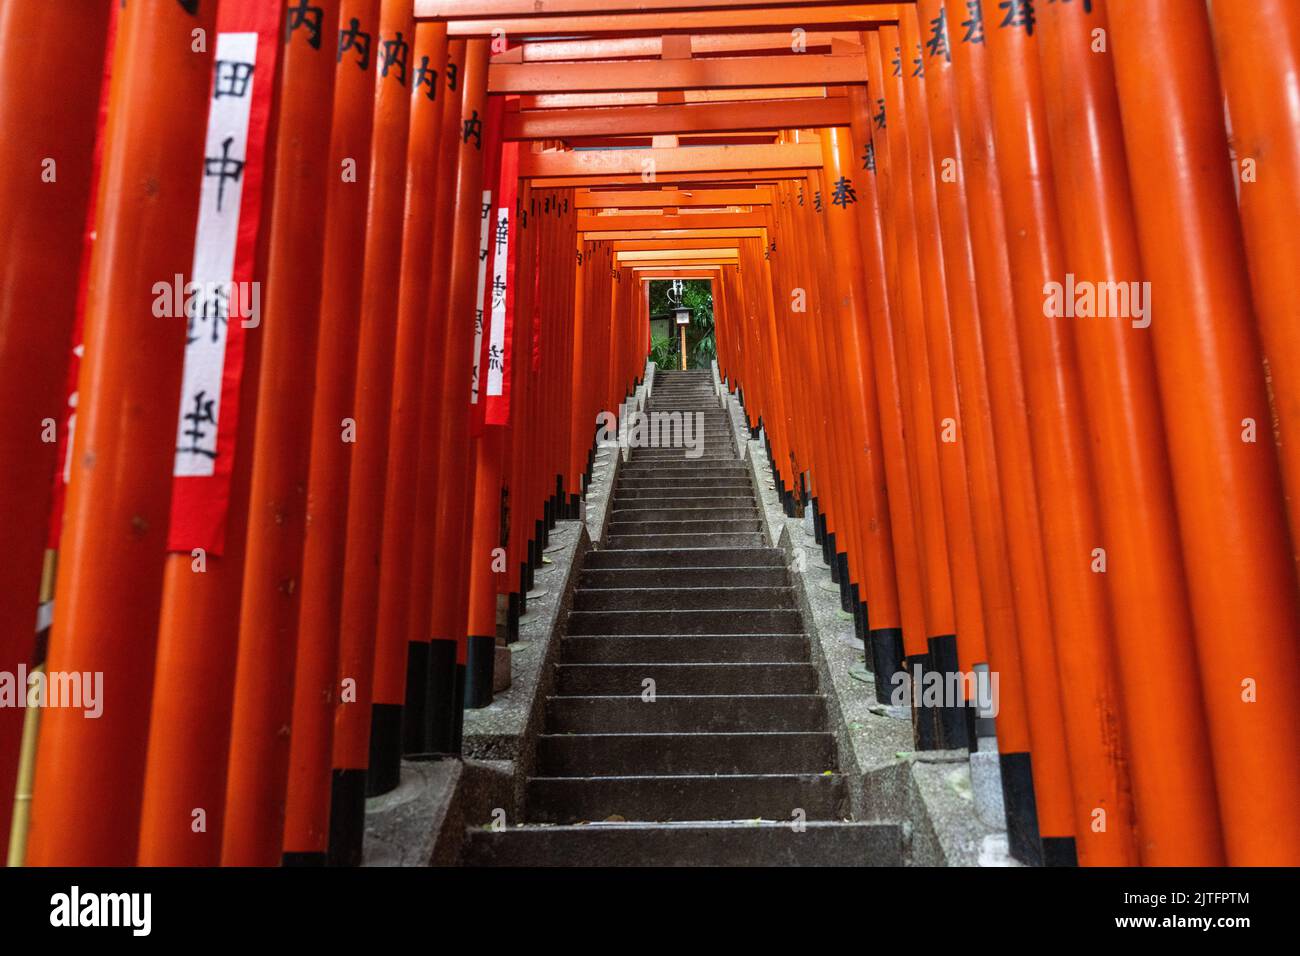 Ein lebhafter Tunnel aus roten Torii-Toren säumen die Steintreppen, die zum Hie Jinja-Schrein in Nagatacho, Chiyoda, Tokio, Japan, führen. Der schintoistische Schrein ist einer der drei großen Schreine Tokyos. Stockfoto